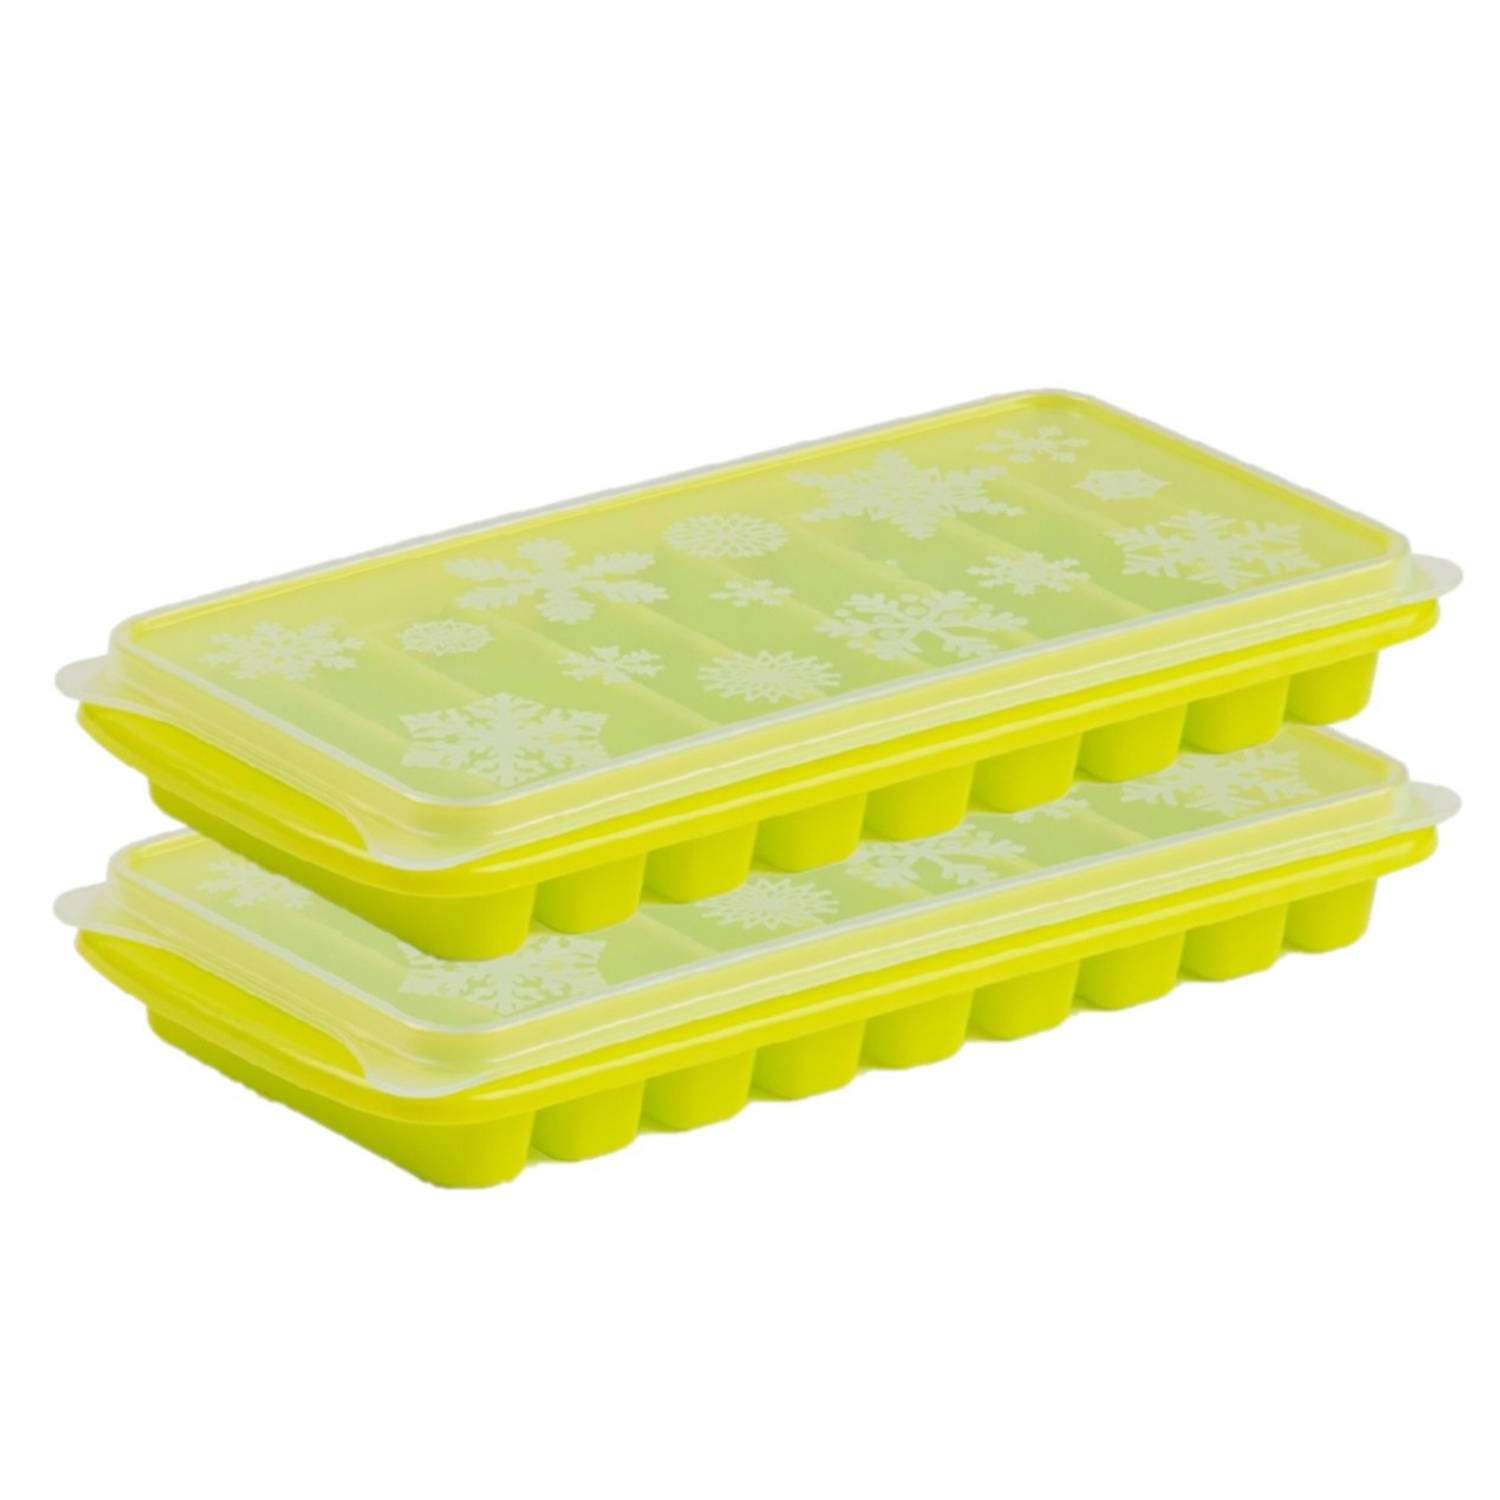 2x stuks Trays met Flessenhals ijsblokjes/ijsklontjes staafjes vormpjes 10 vakjes kunststof groen - IJsblokjesvormen